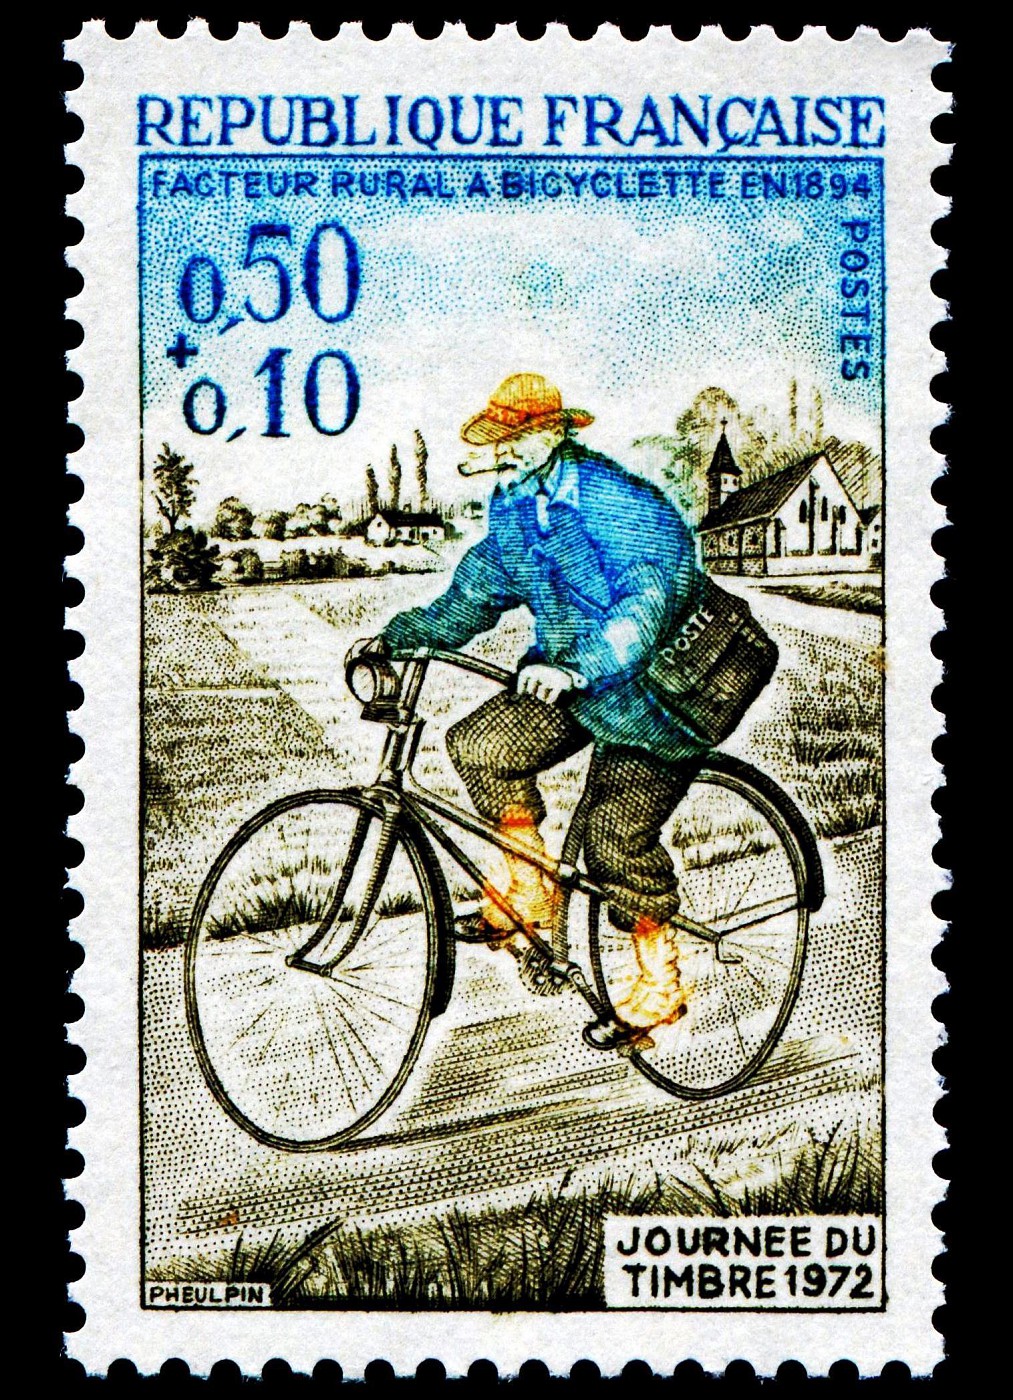 Rural postman on bicycle in 1894